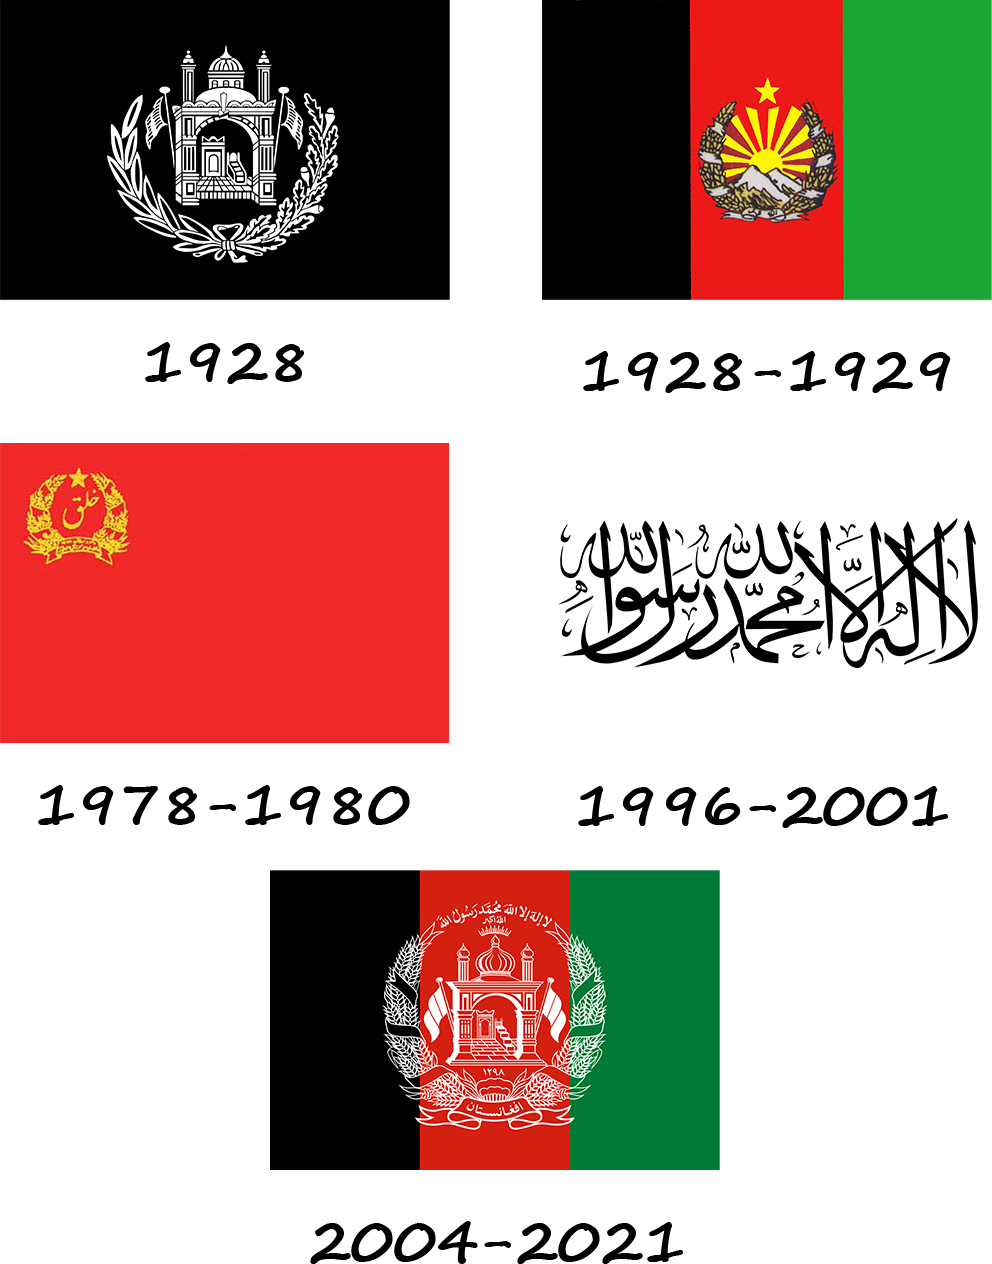 Historia de la bandera de Afganistán